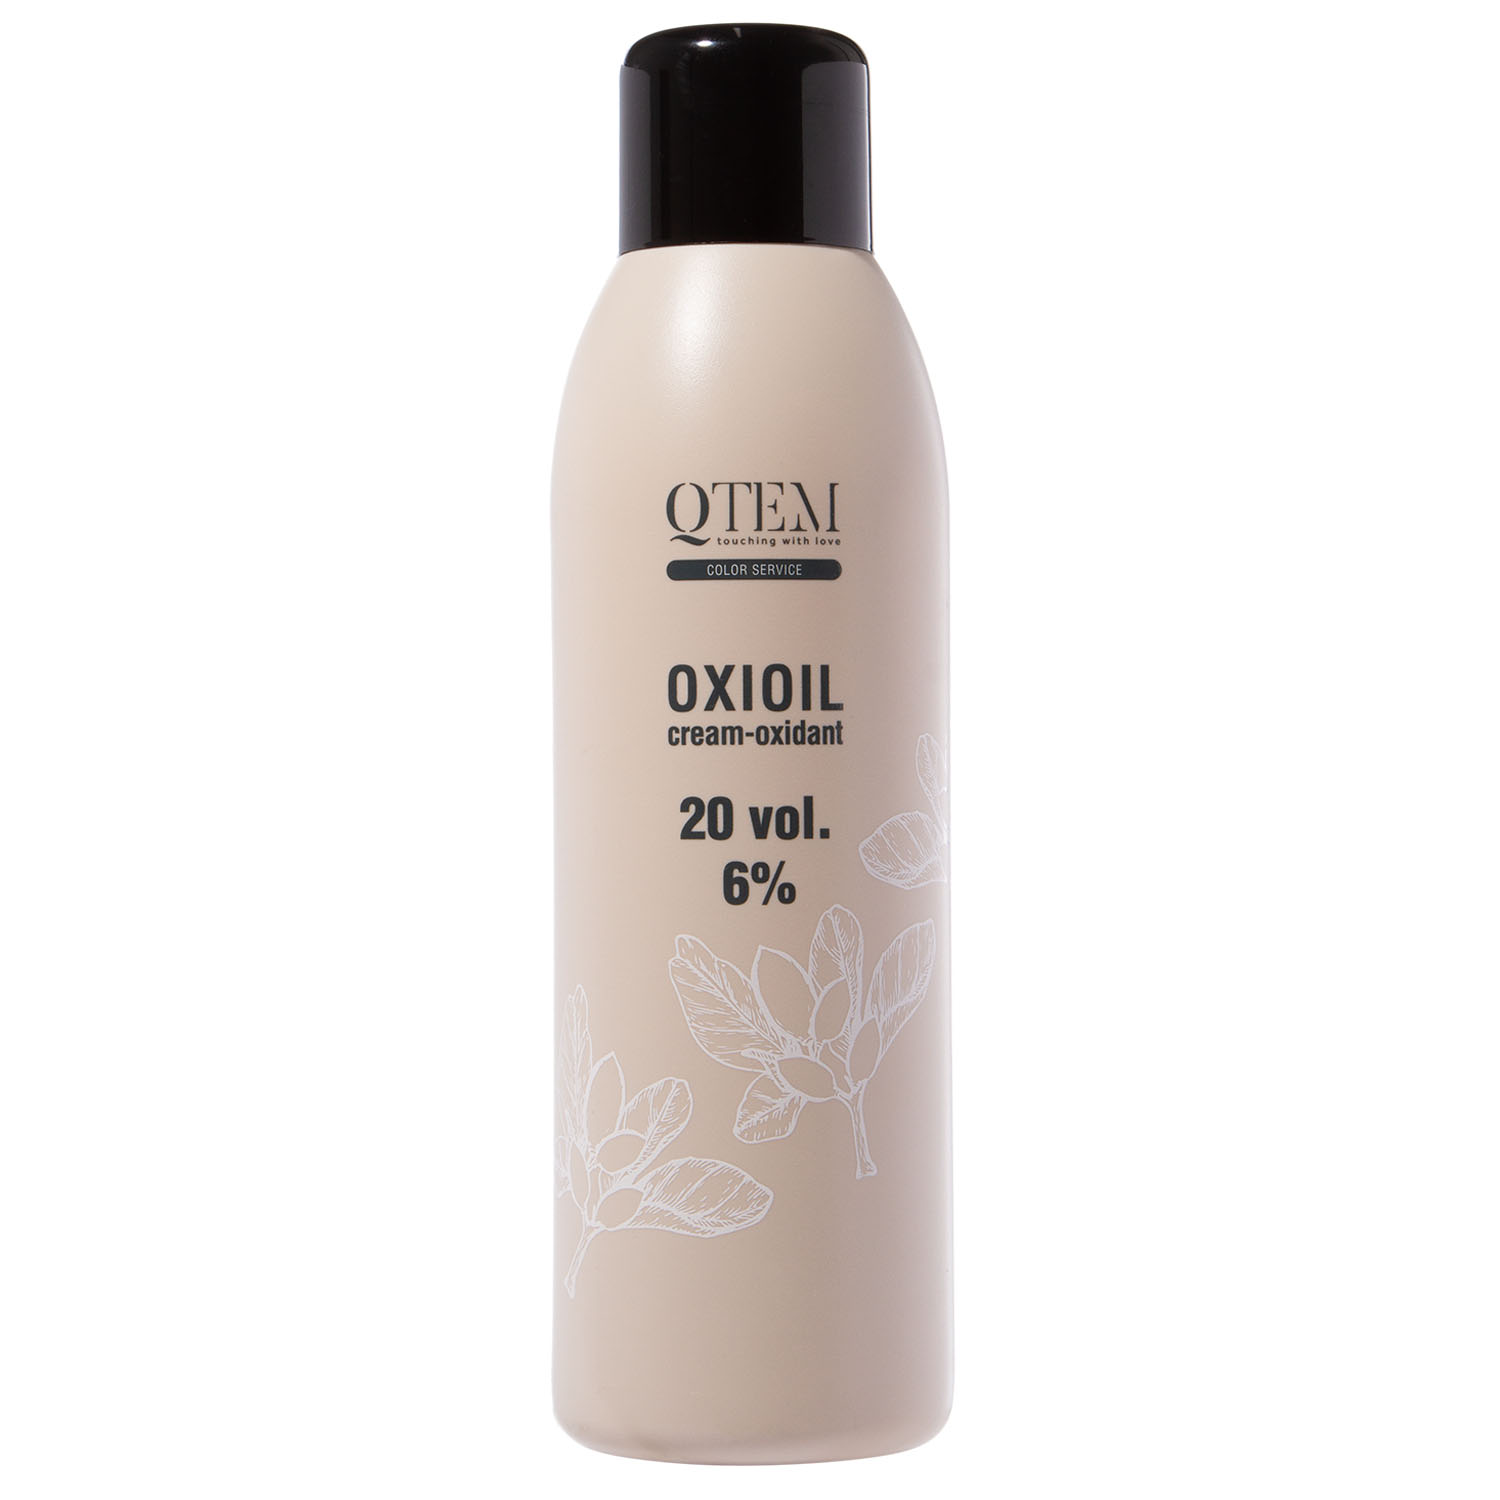 Qtem Универсальный крем-оксидант Oxioil 6% (20 Vol.), 1000 мл (Qtem, Color Service)